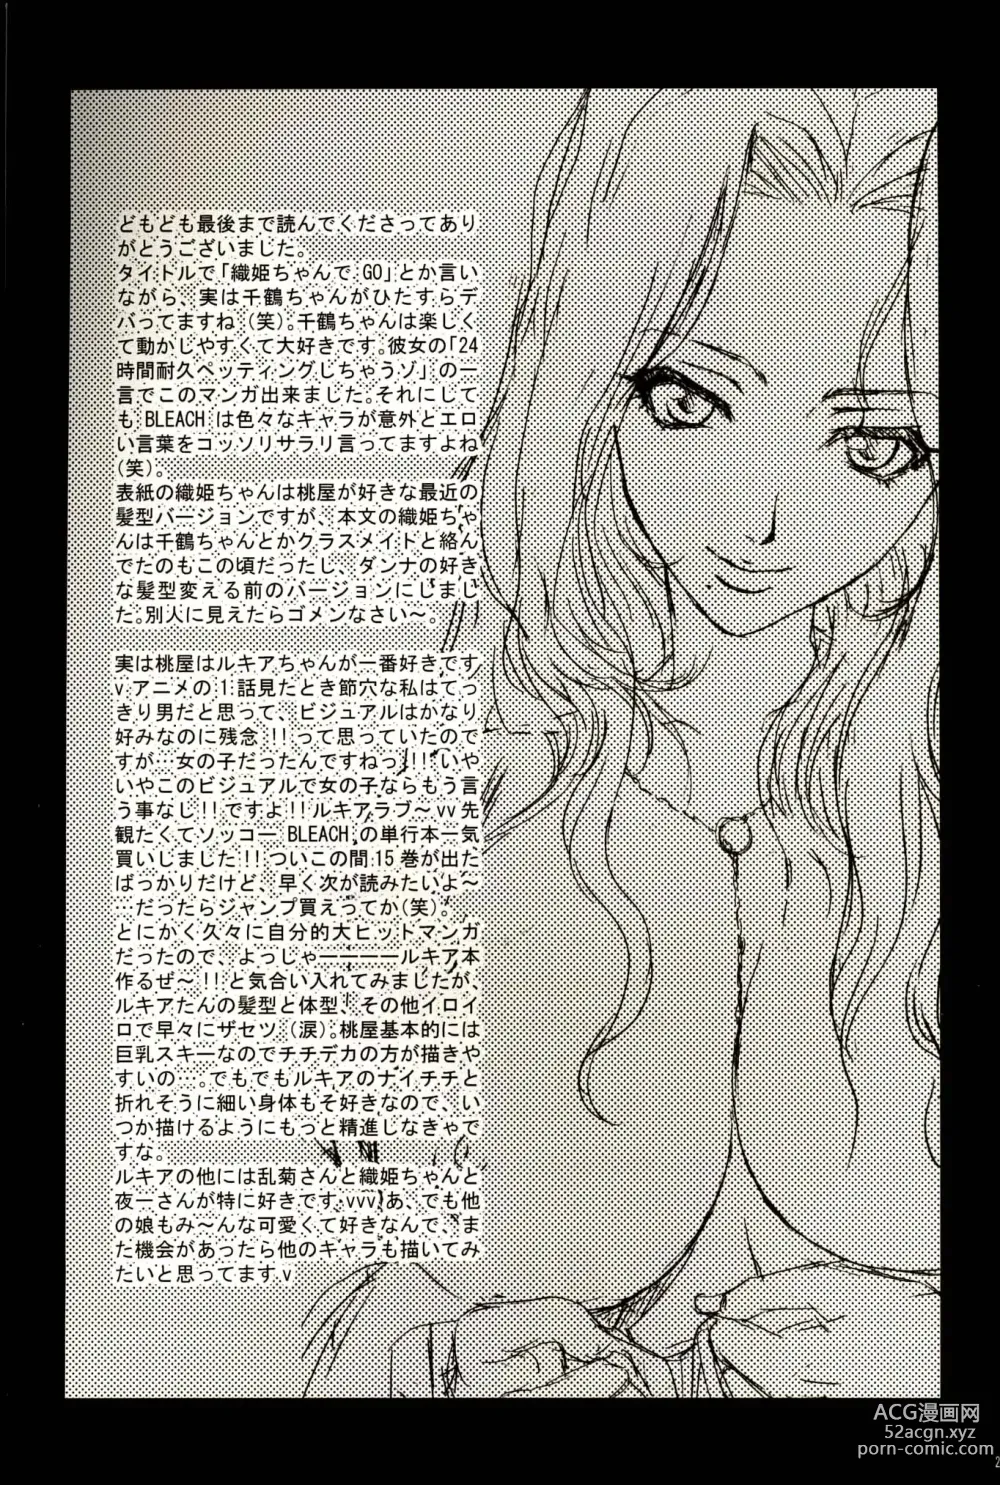 Page 28 of doujinshi Orihime-chan de Go